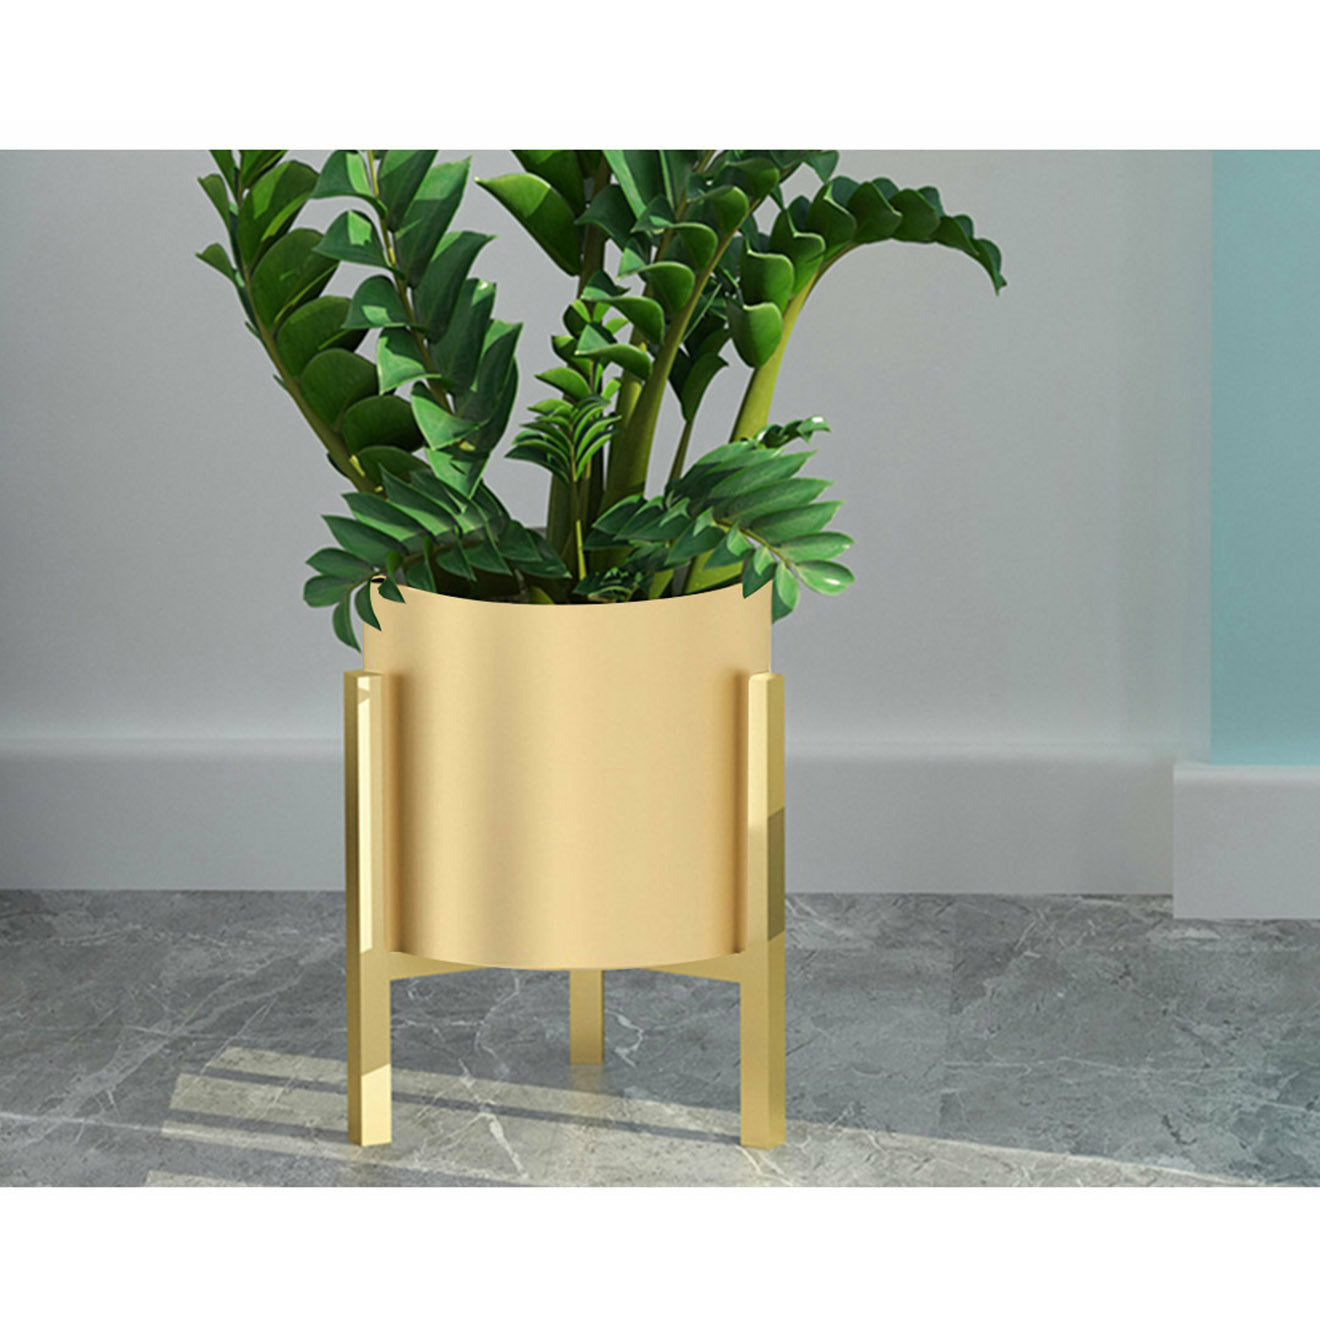 Soga 2 X 30 Cm Gold Metal Plant Stand With Flower Pot Holder Corner Shelving Rack Indoor Display